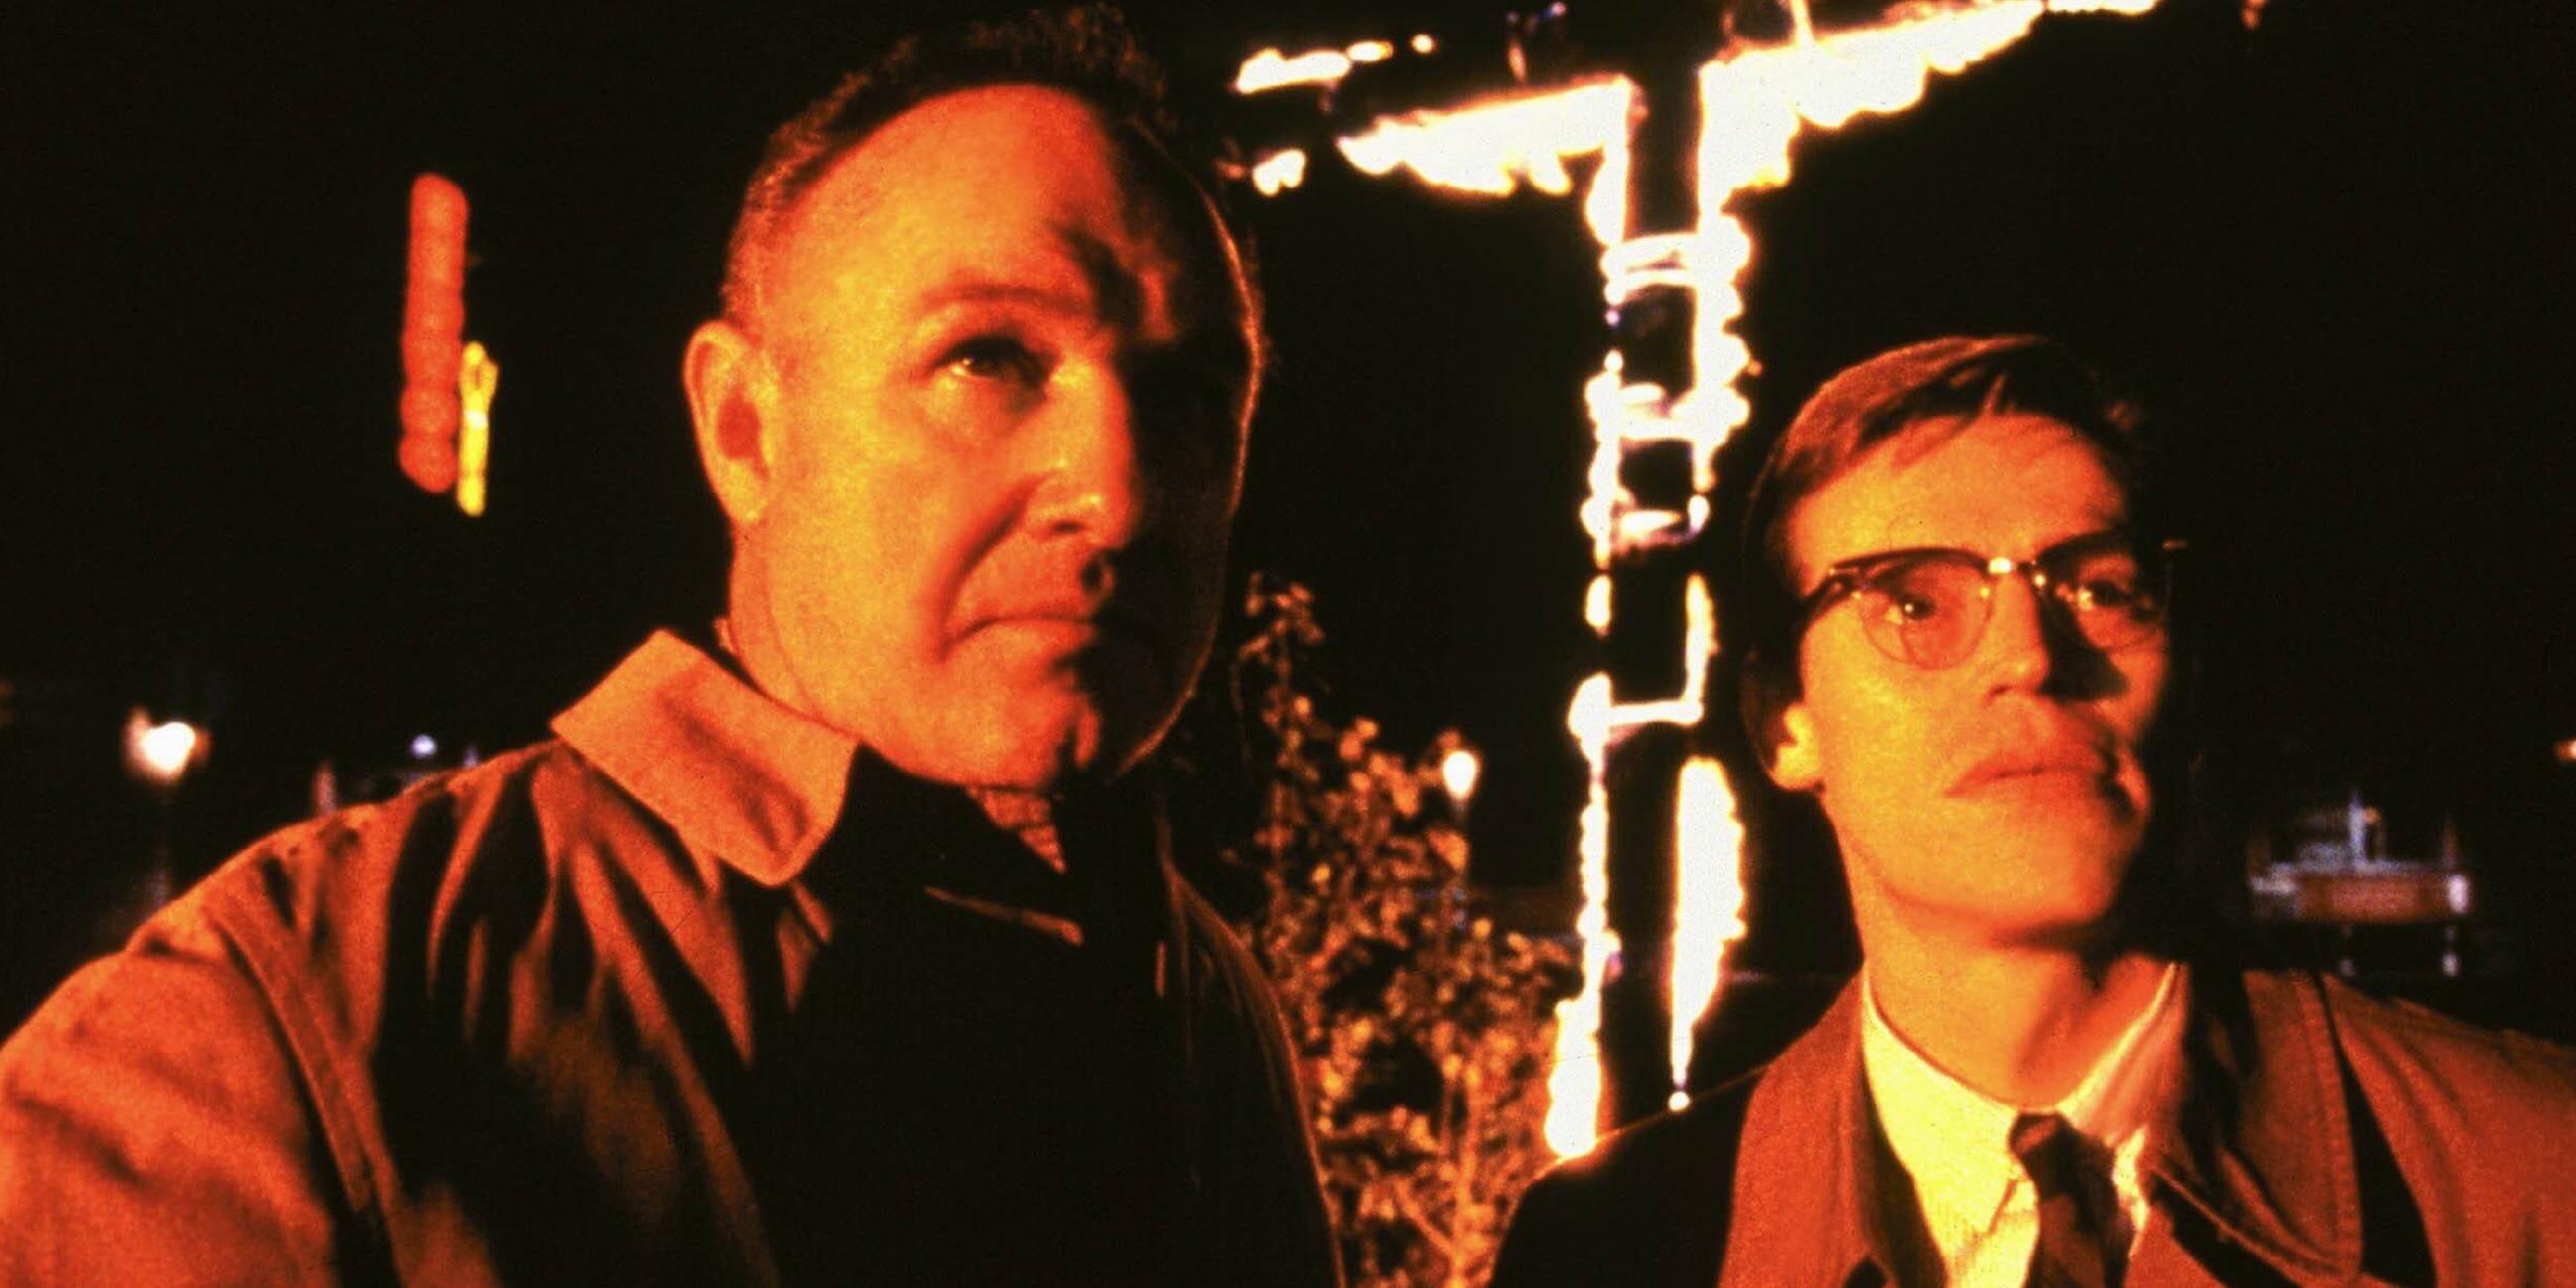 Archiv: Gene Hackman (l) und Willem Dafoe in einer Filmszene von "Mississippi Burning" (USA 1988)